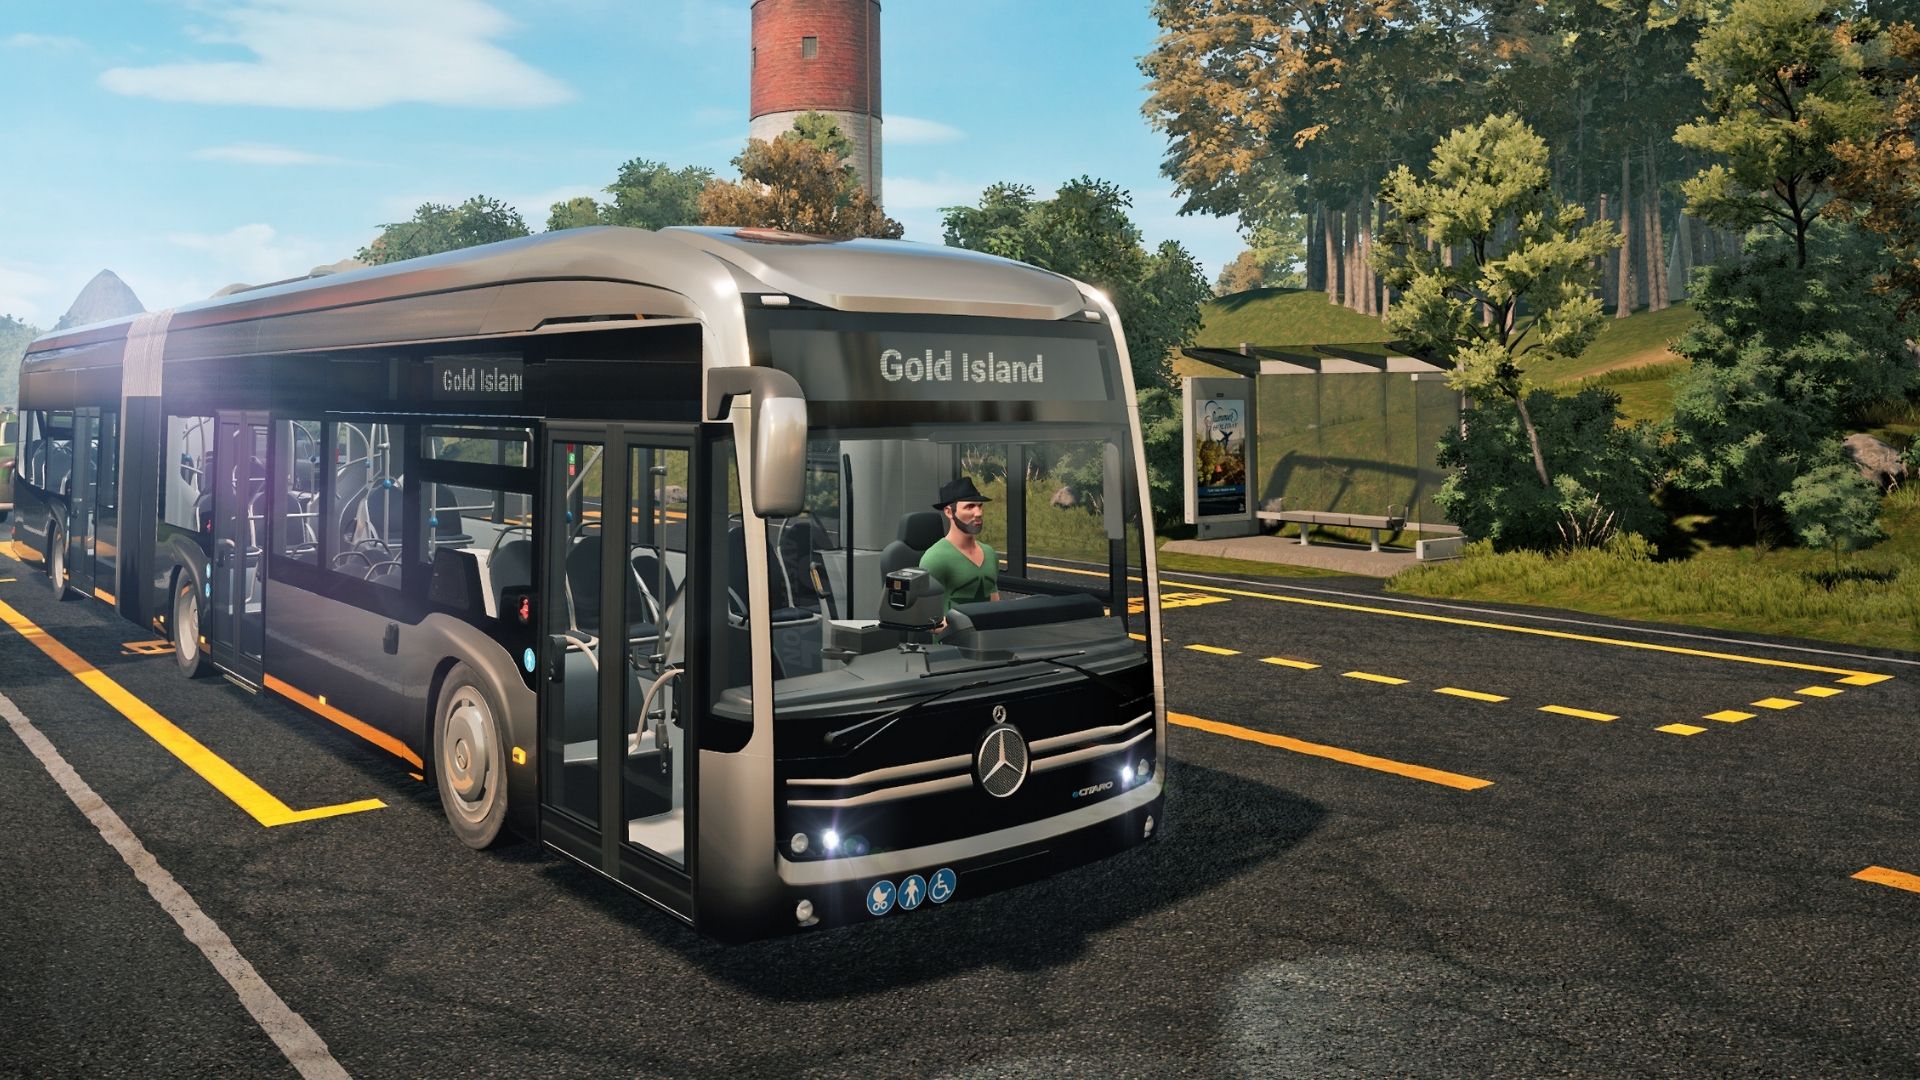 Programe suas rotas em Bus Simulator 21 - MTED